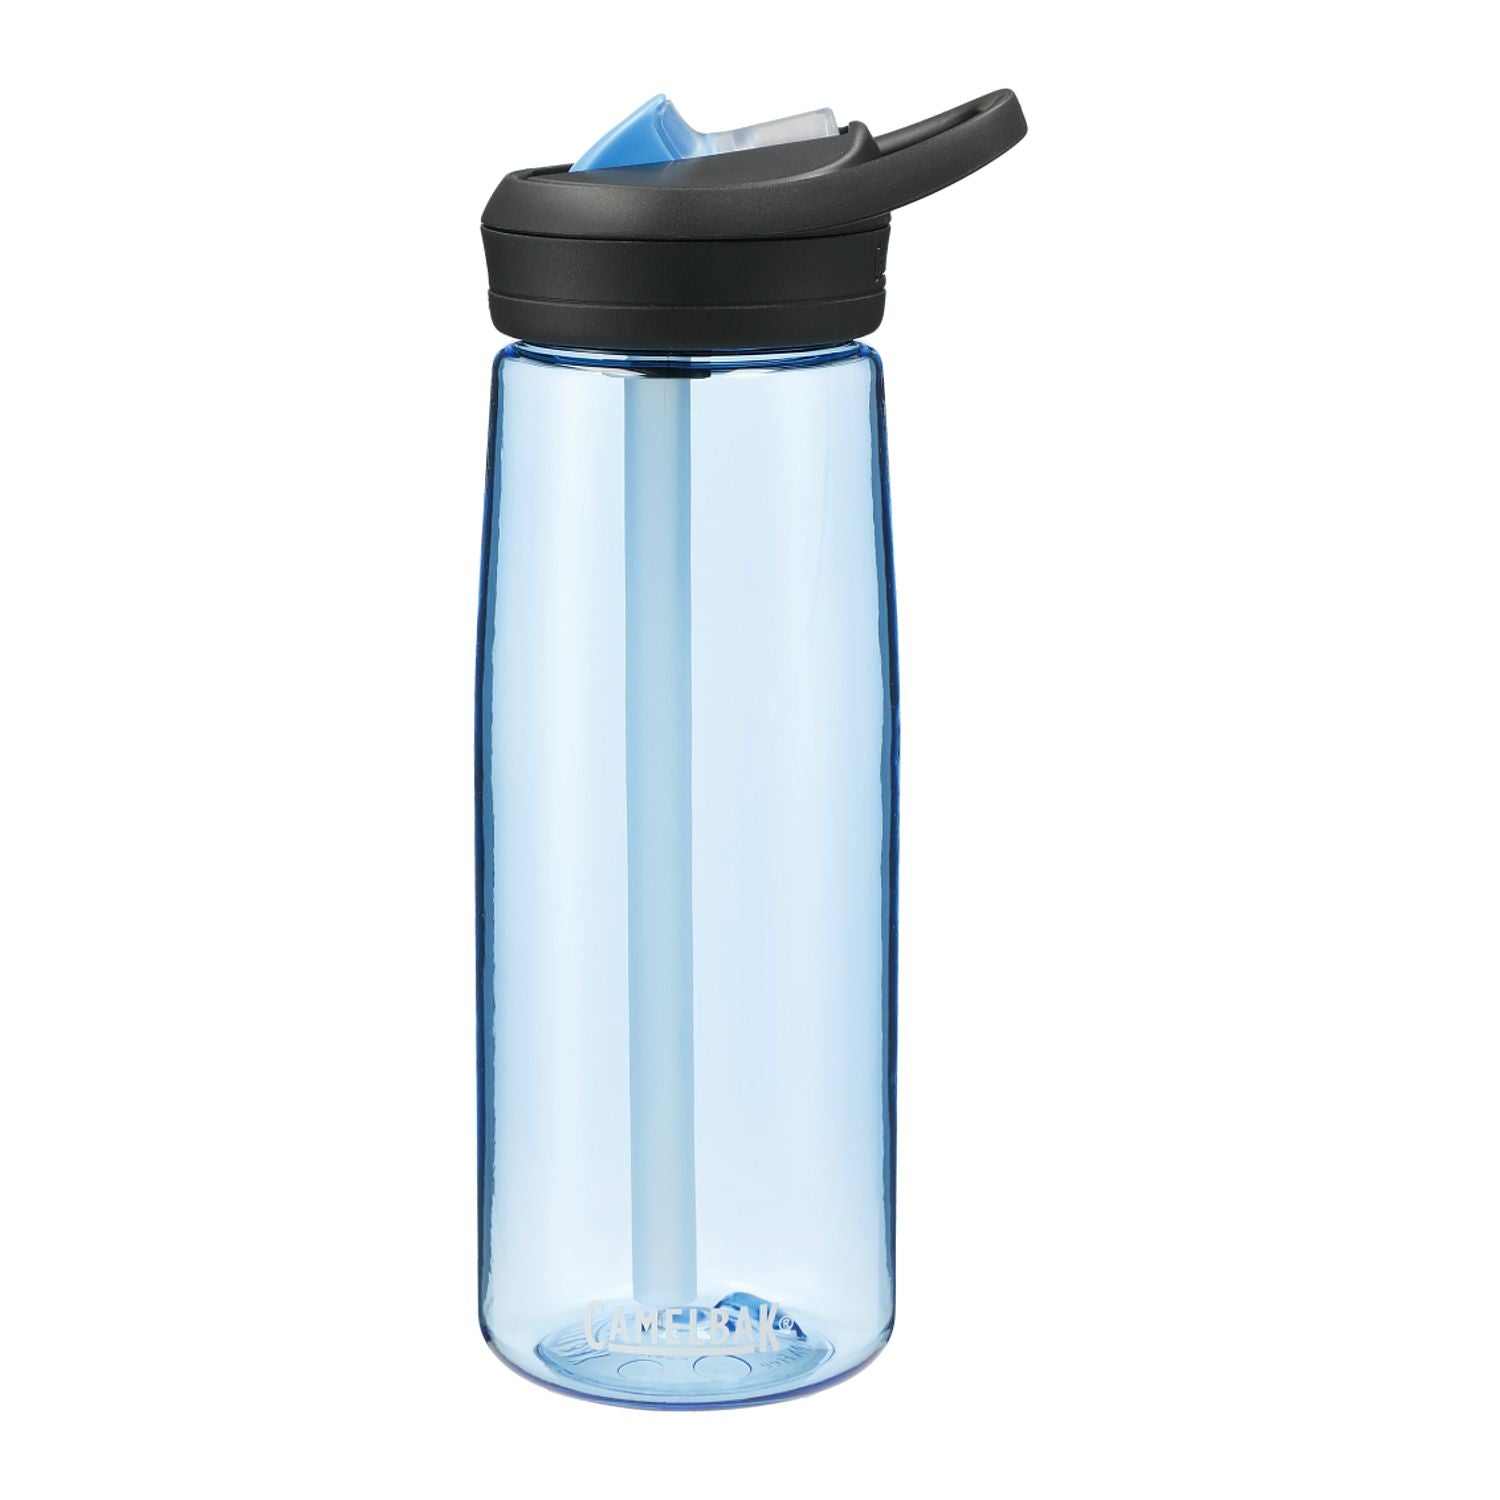 Customizable Camelbak Eddy tritan water bottle in blue